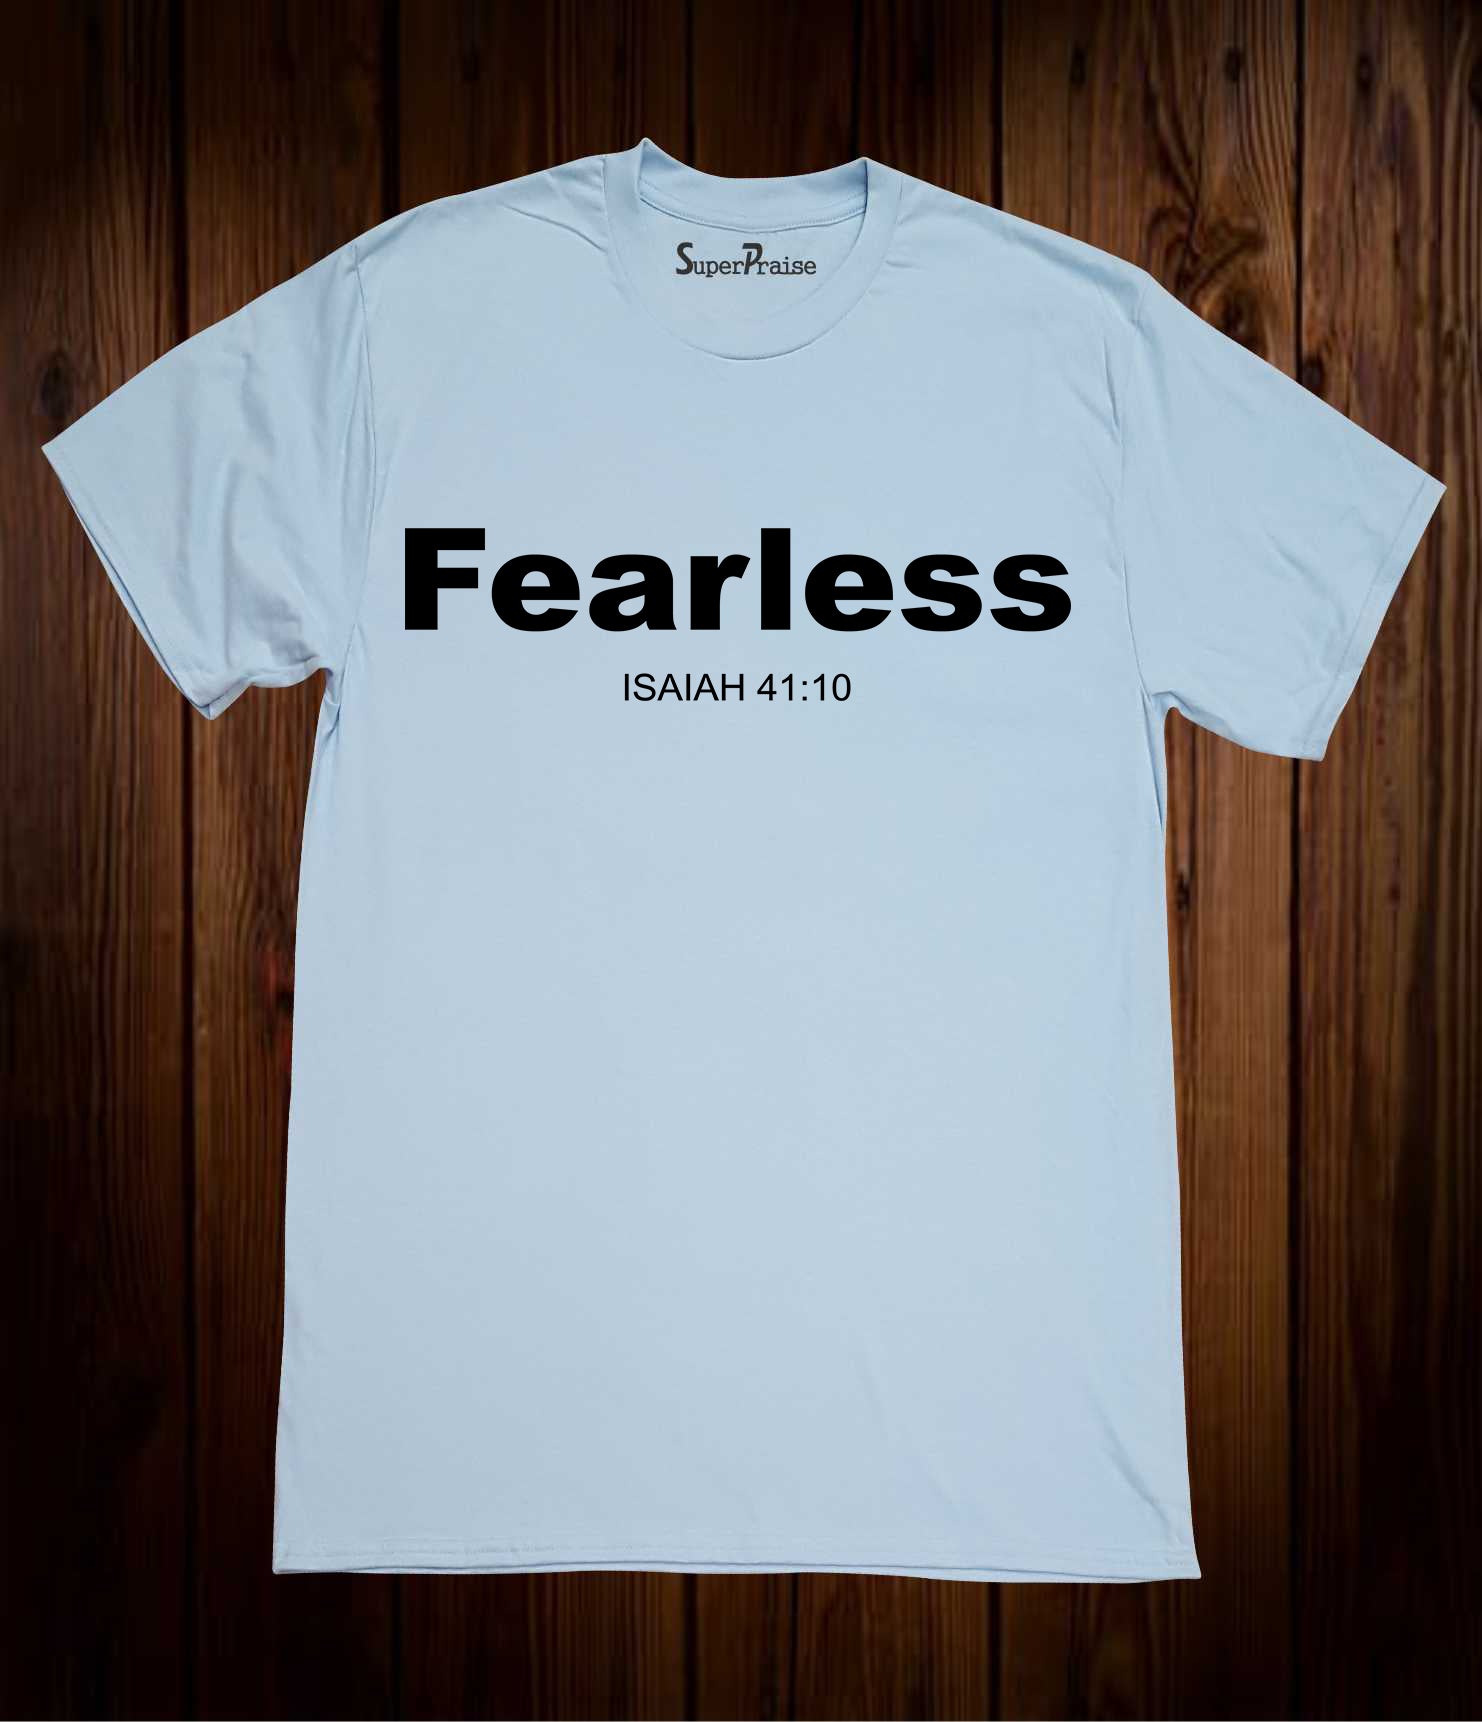 Fearless Isaiah 41:10 Bible Verse T Shirt